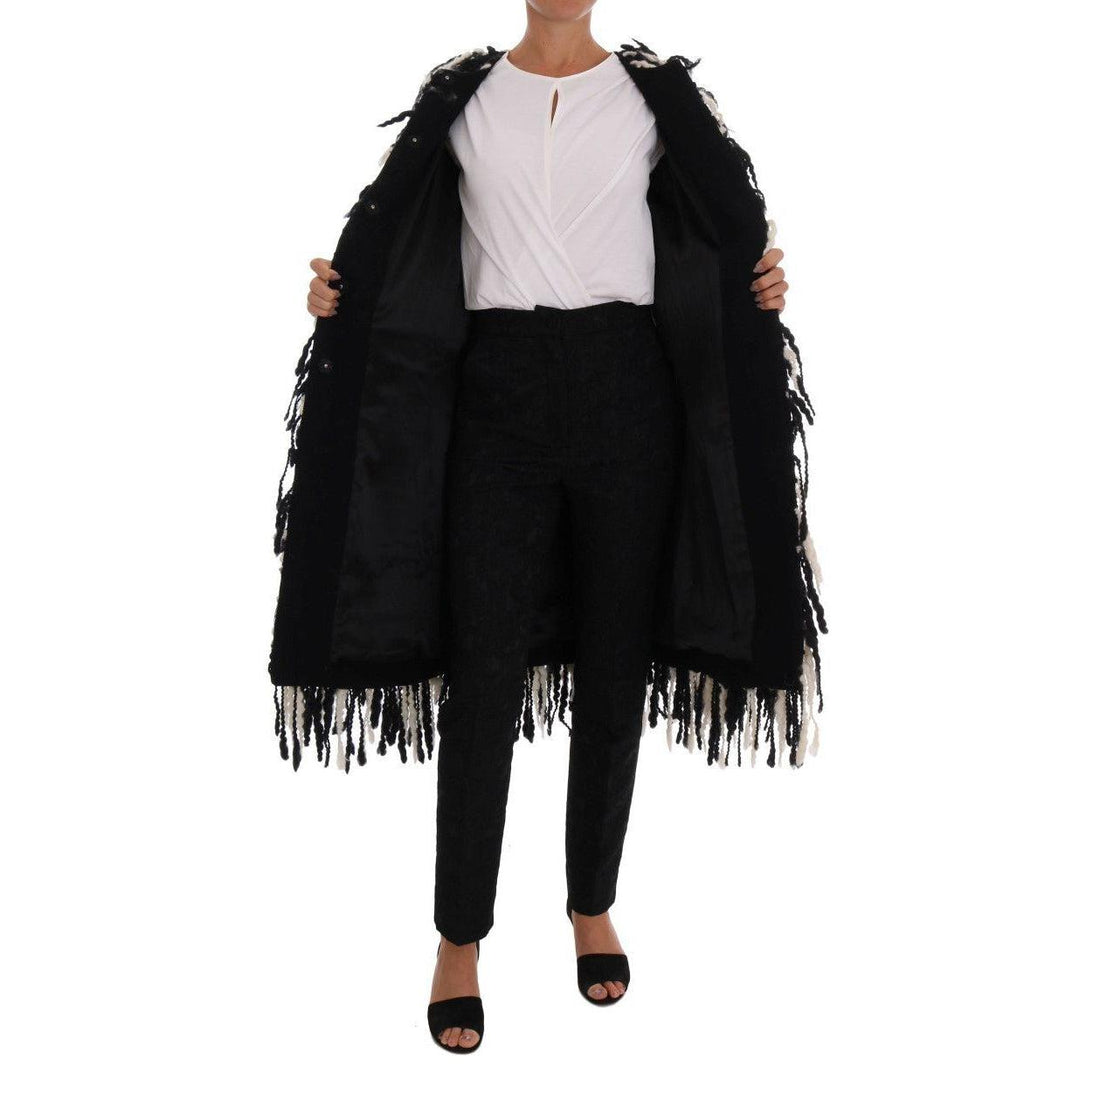 Dolce & Gabbana Black and White Fringed Wool Coat Jacket